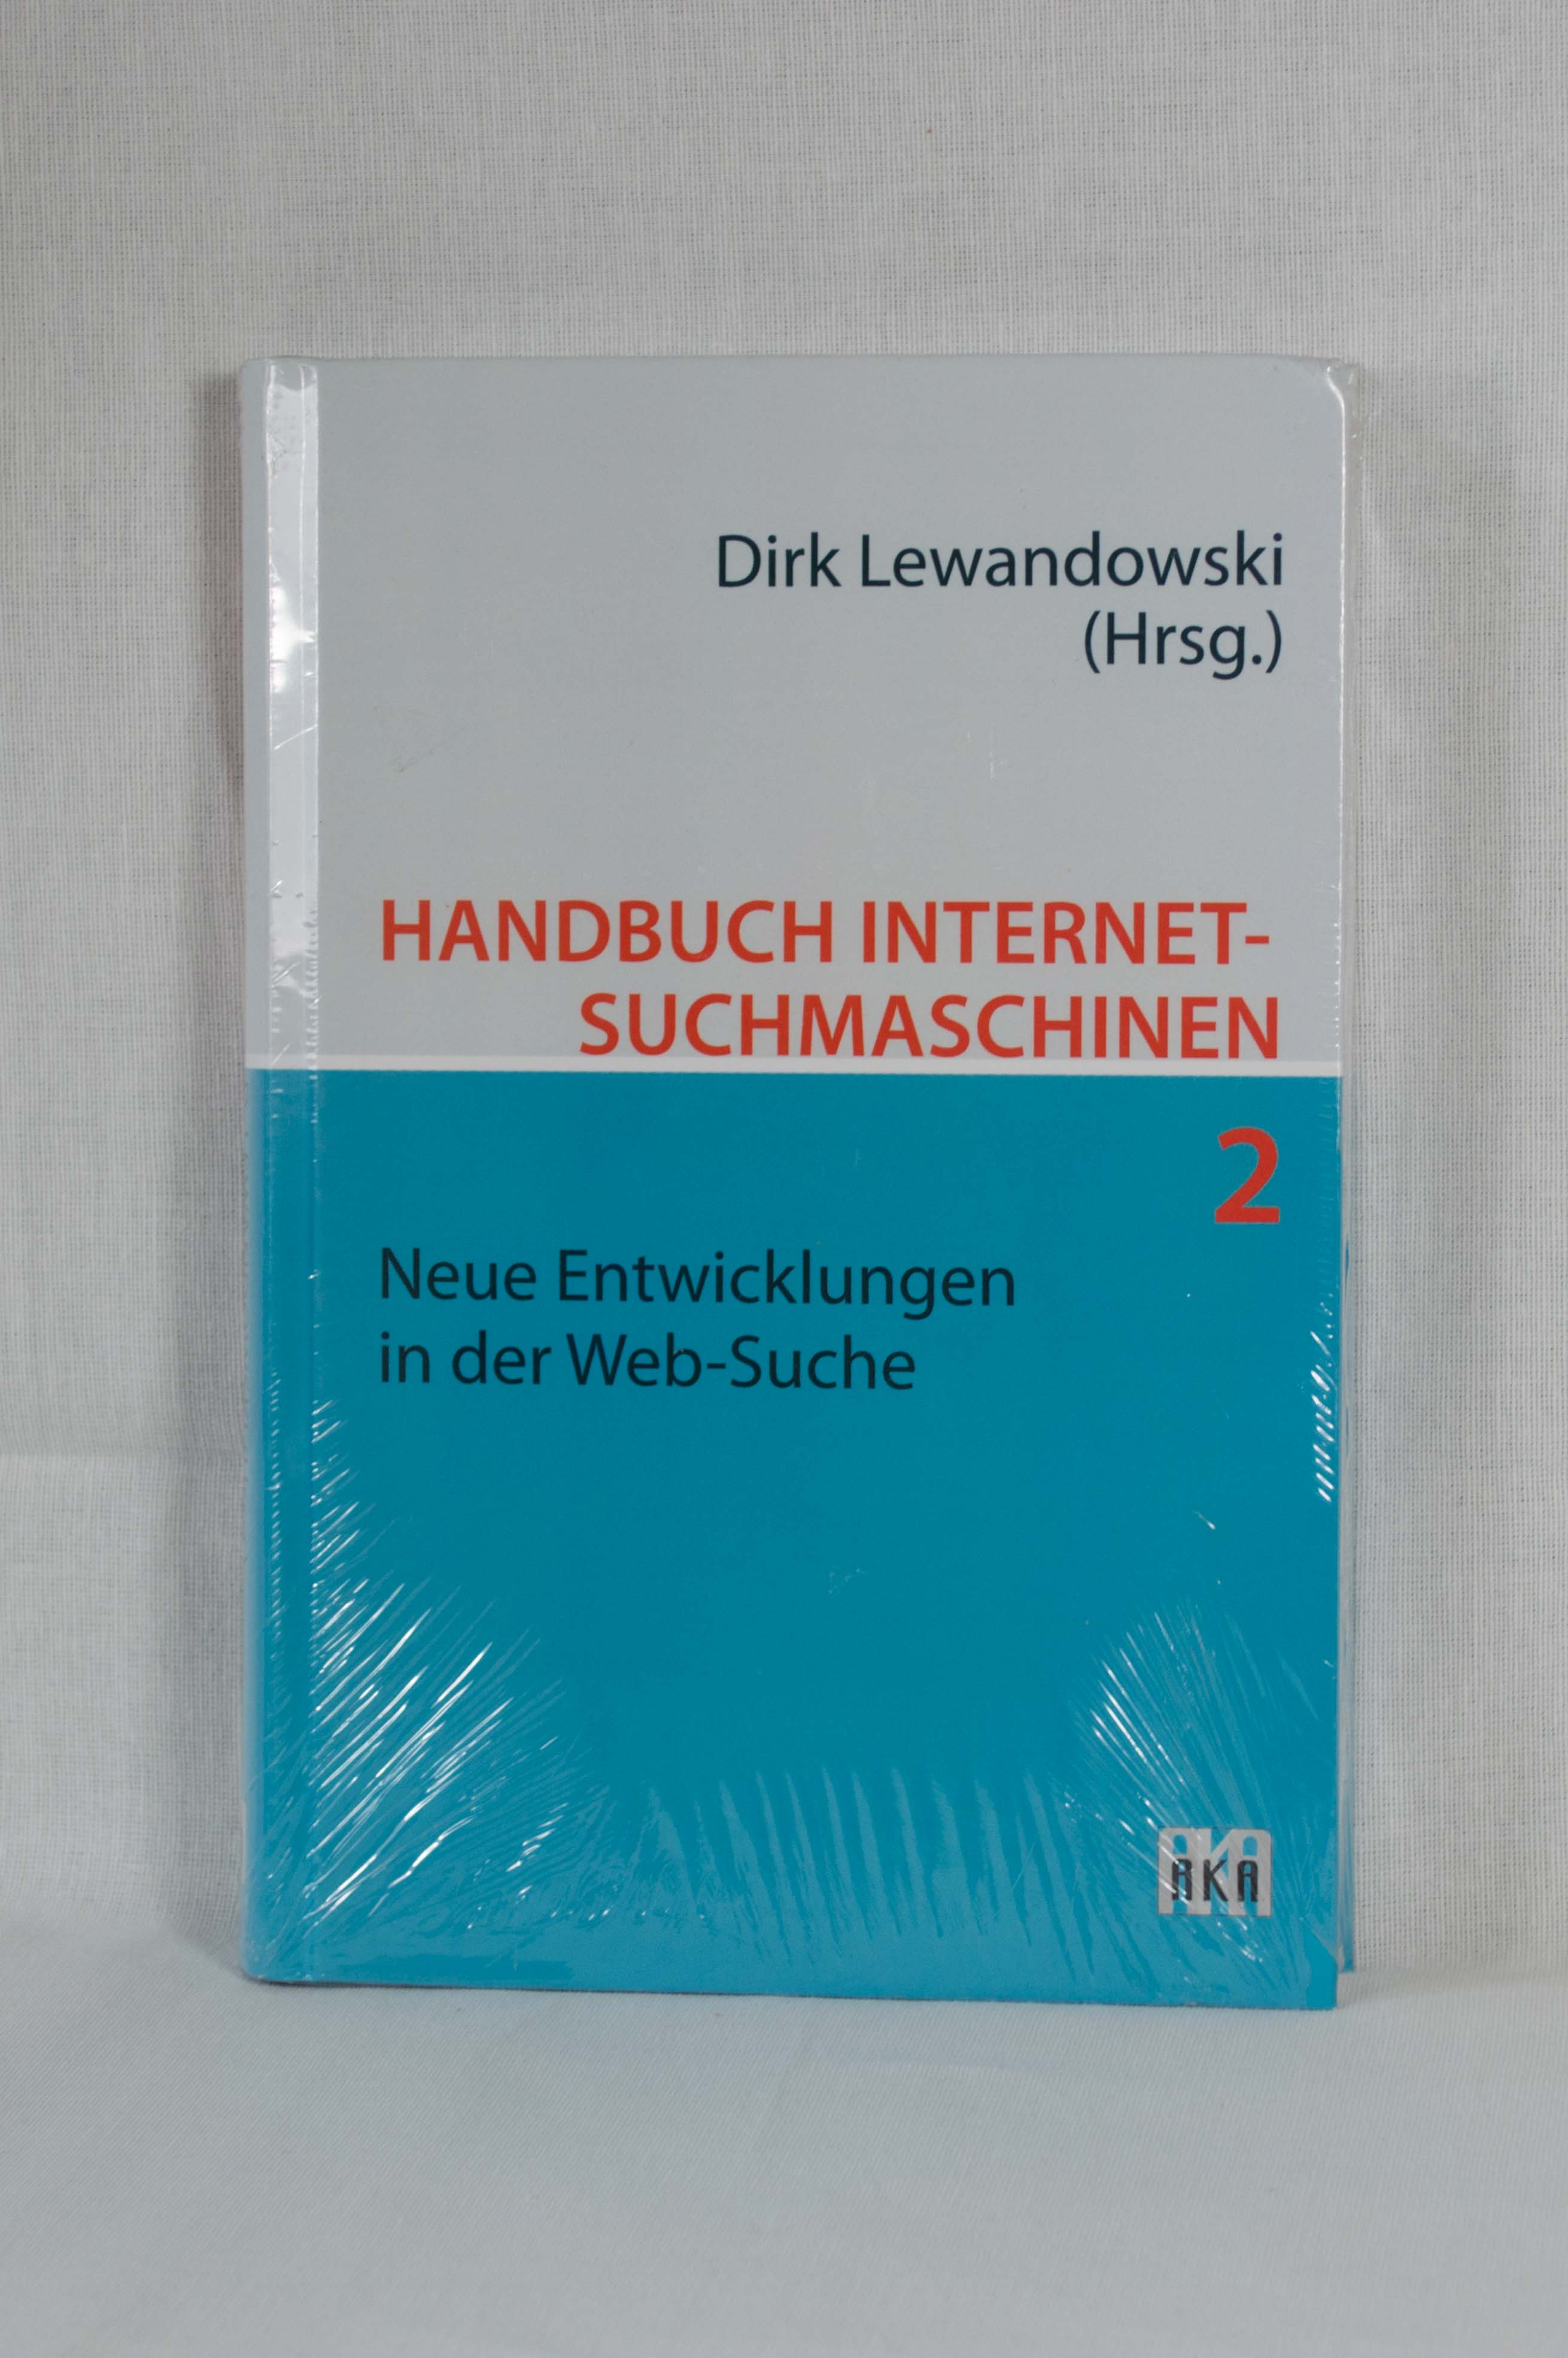 Handbuch Internet-Suchmaschinen, Teil 2: Neue Entwicklungen in der Web-Suche. - Lewandowski, Dirk (Hrsg.)